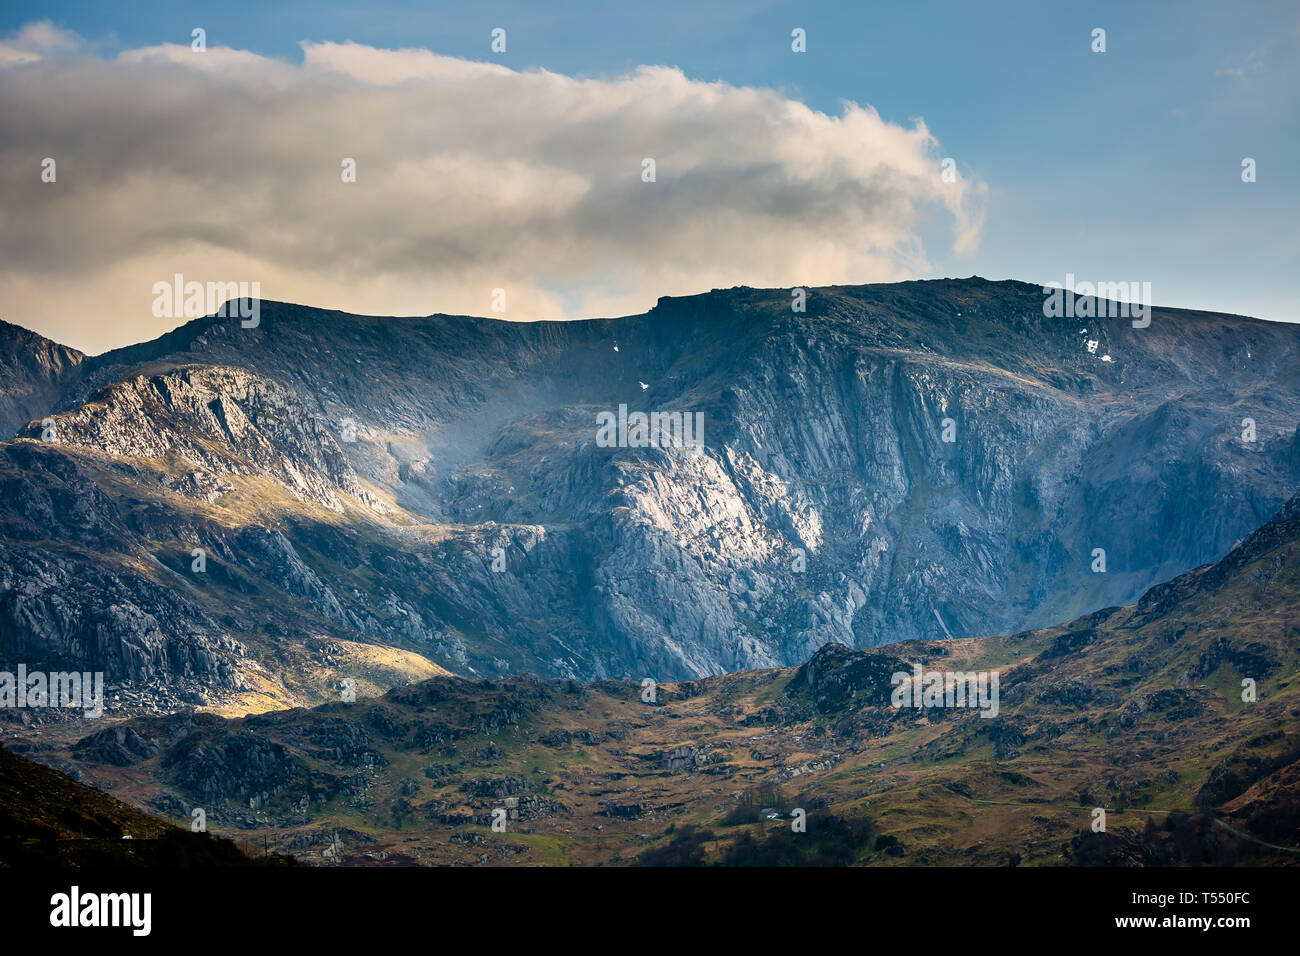 Paisaje de montaña capturaron a finales de marzo, el Parque Nacional de Snowdonia (Eryri), North Wales, Reino Unido. Foto de stock